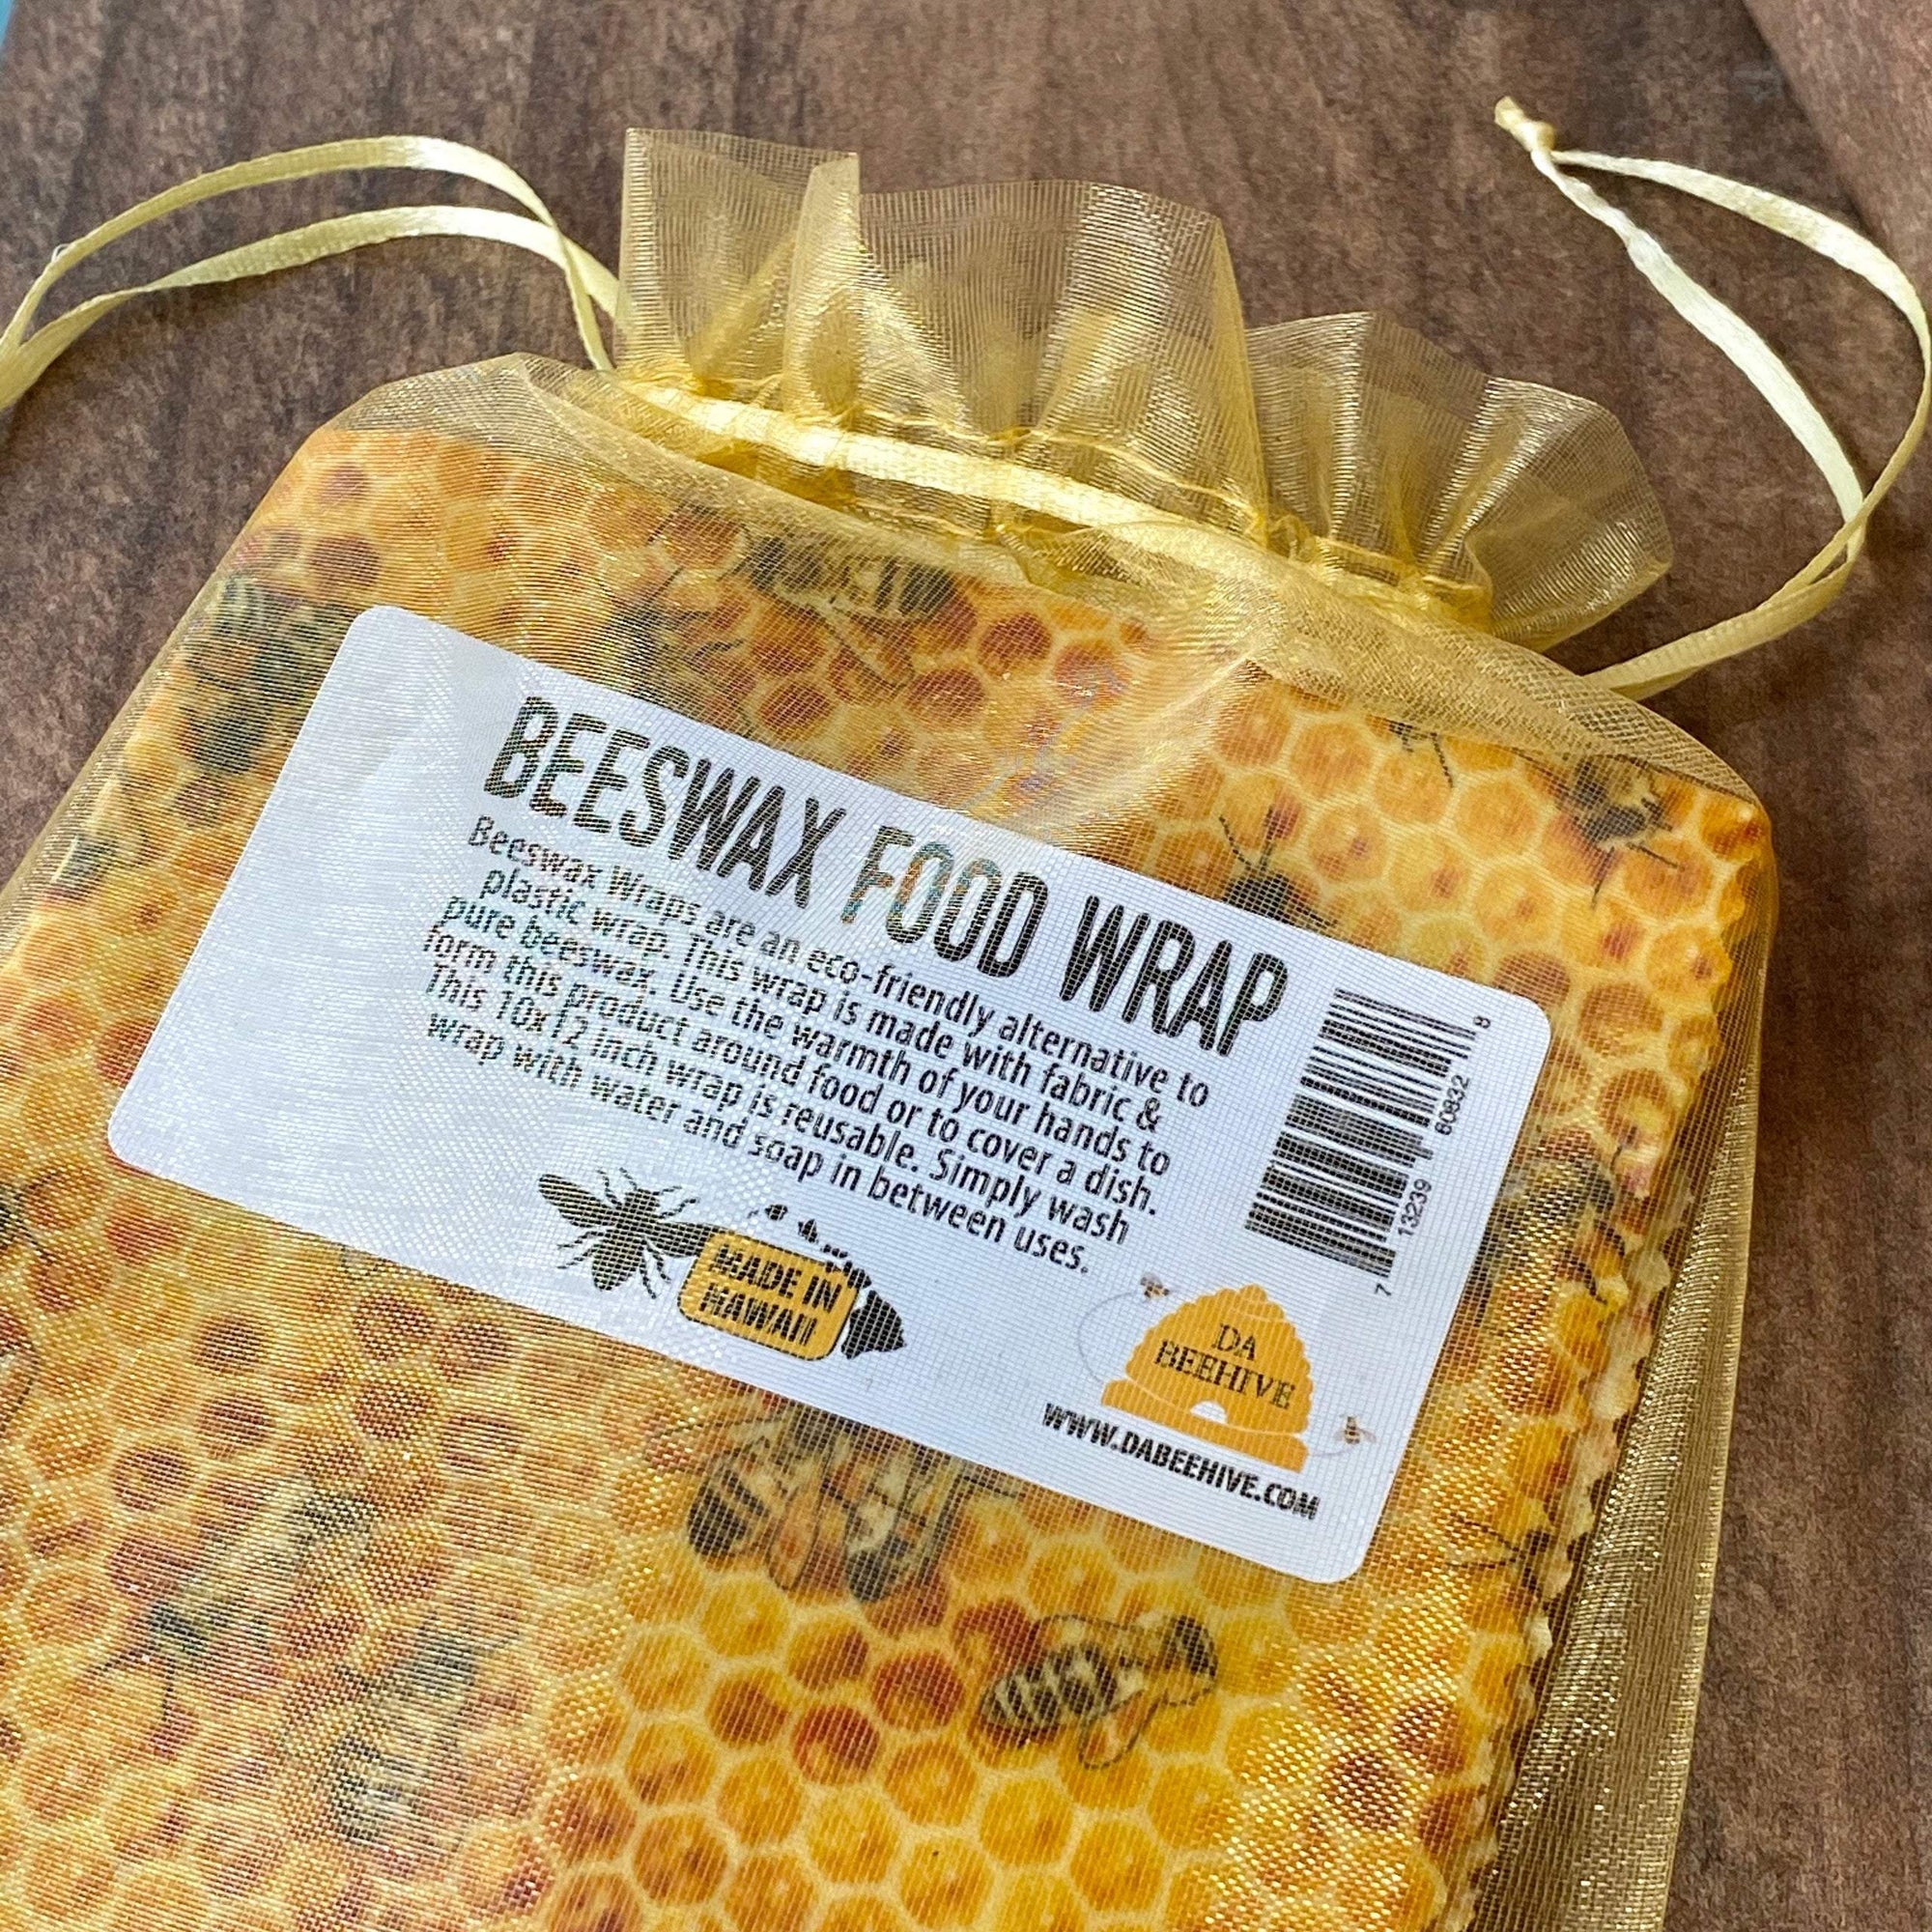 Beeswax Food Wrap - Honeybees